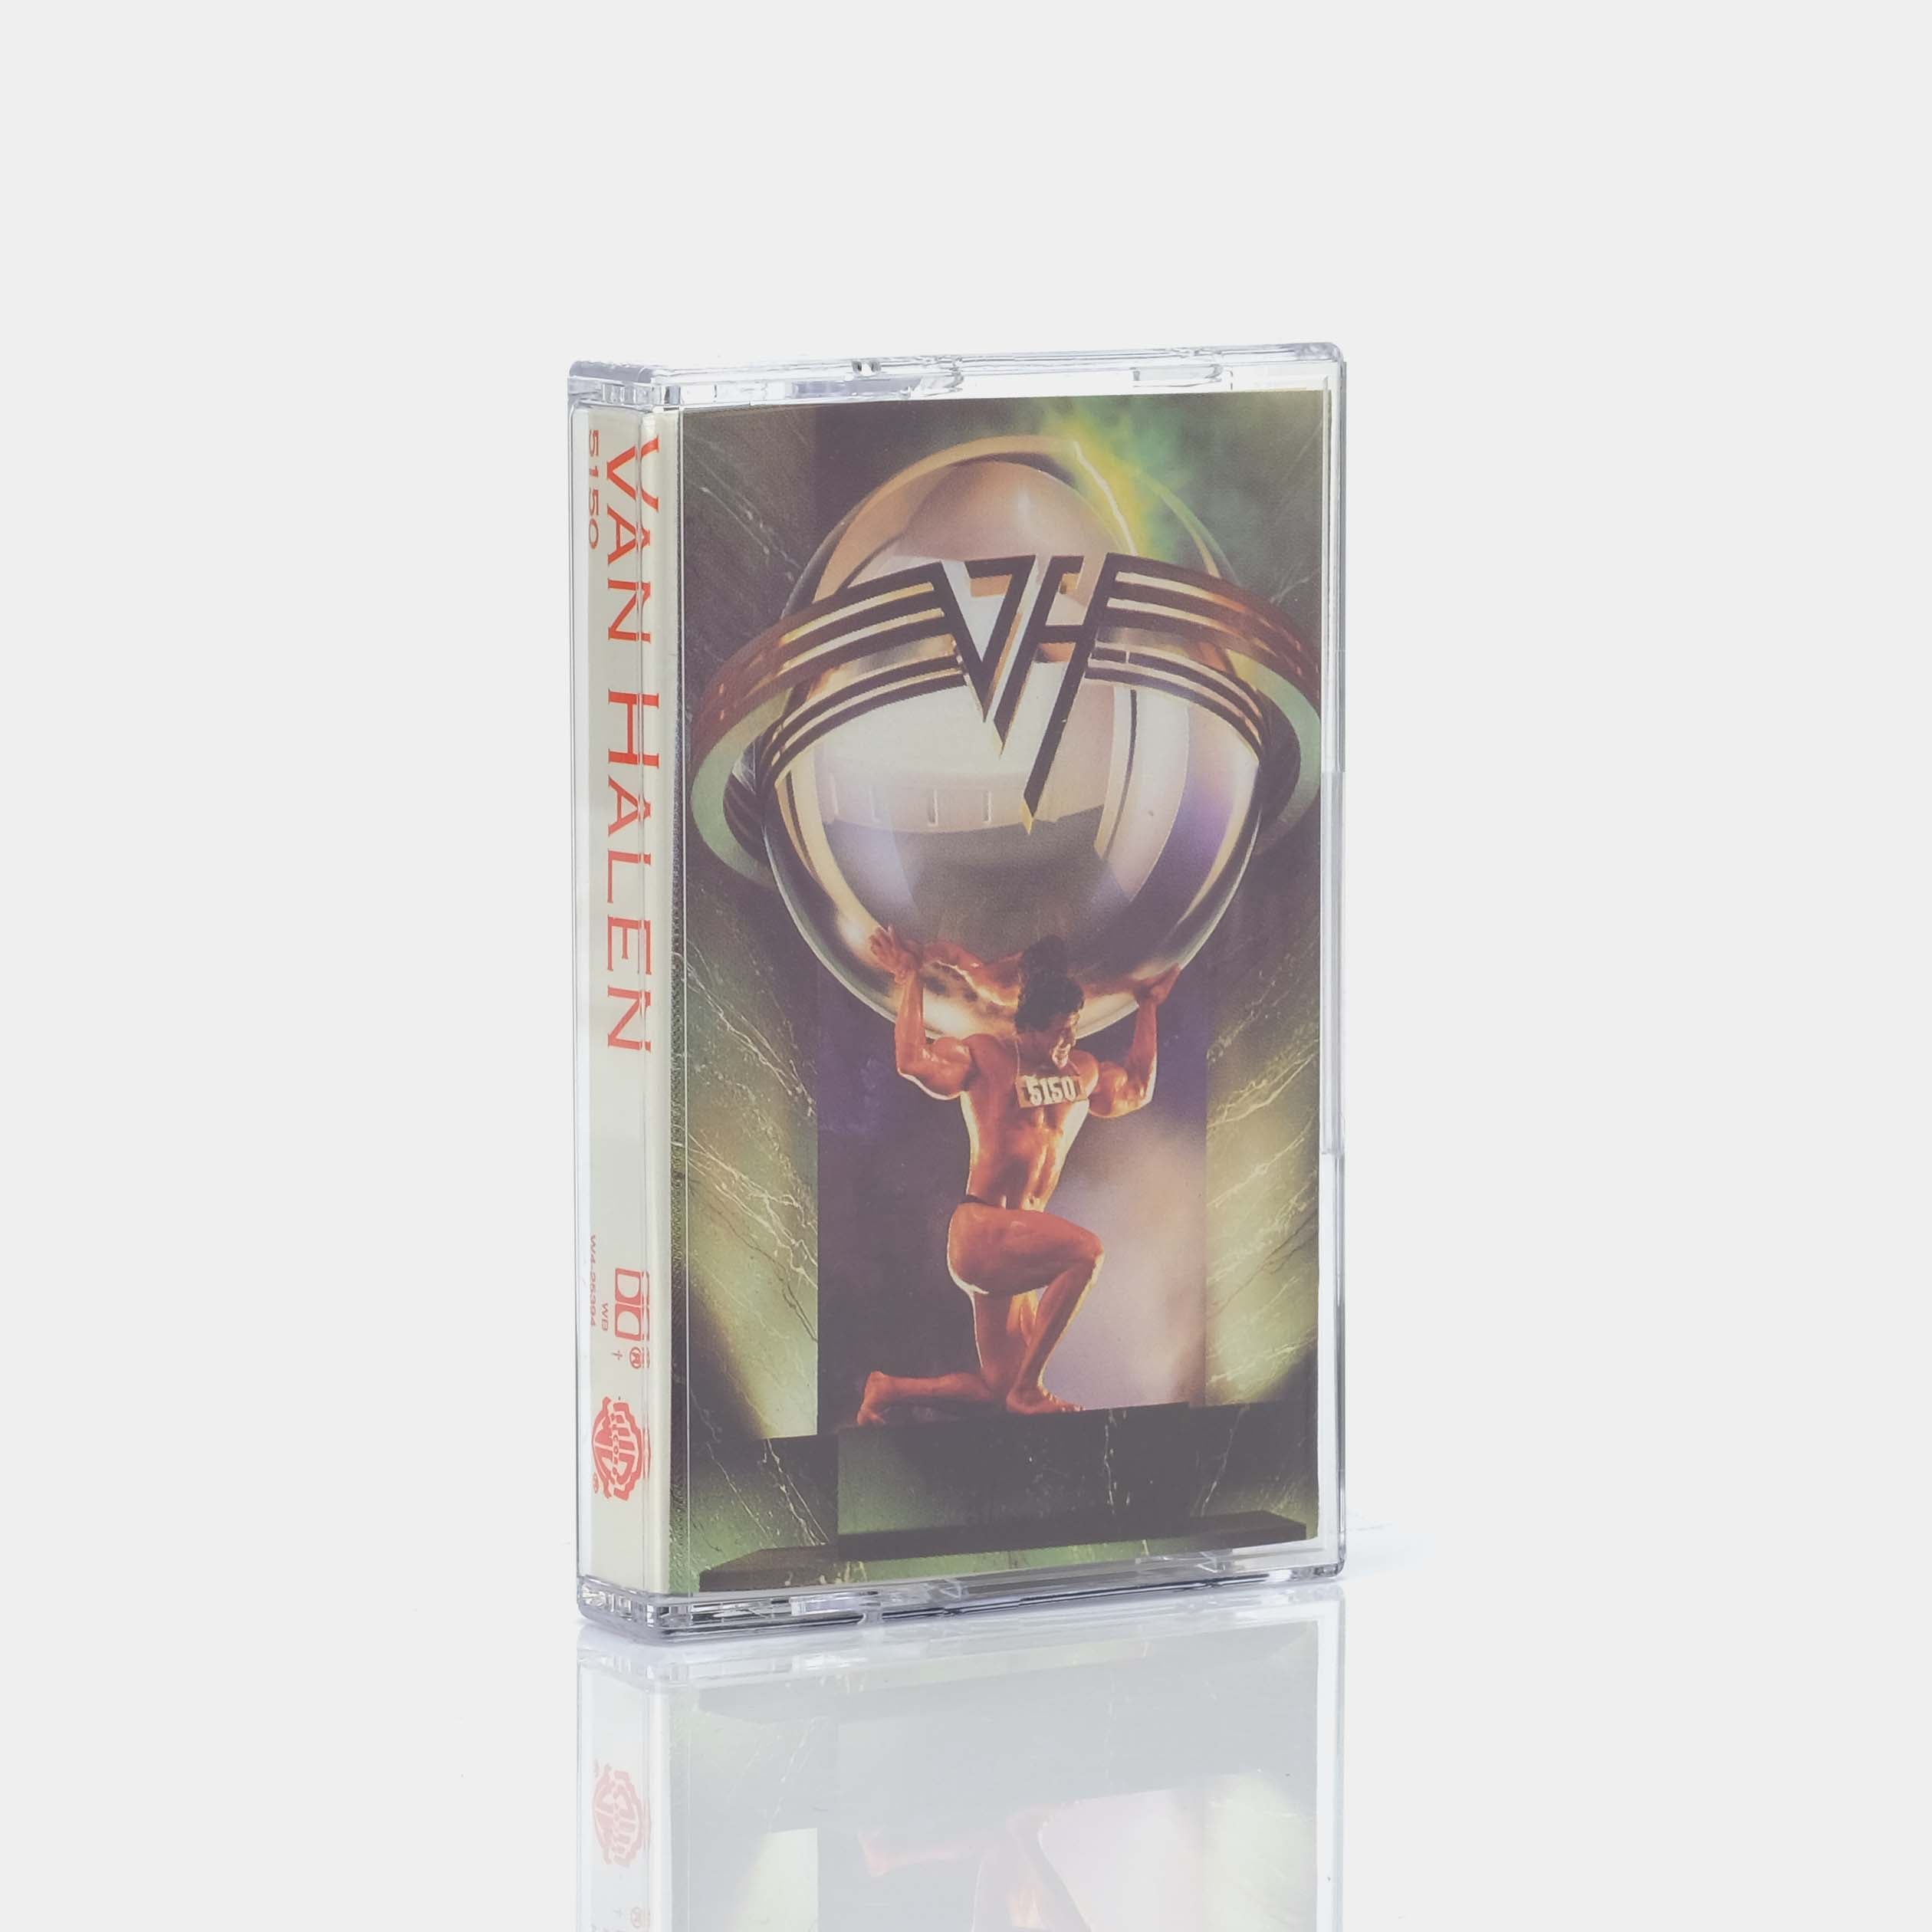 Van Halen - 5150 Cassette Tape